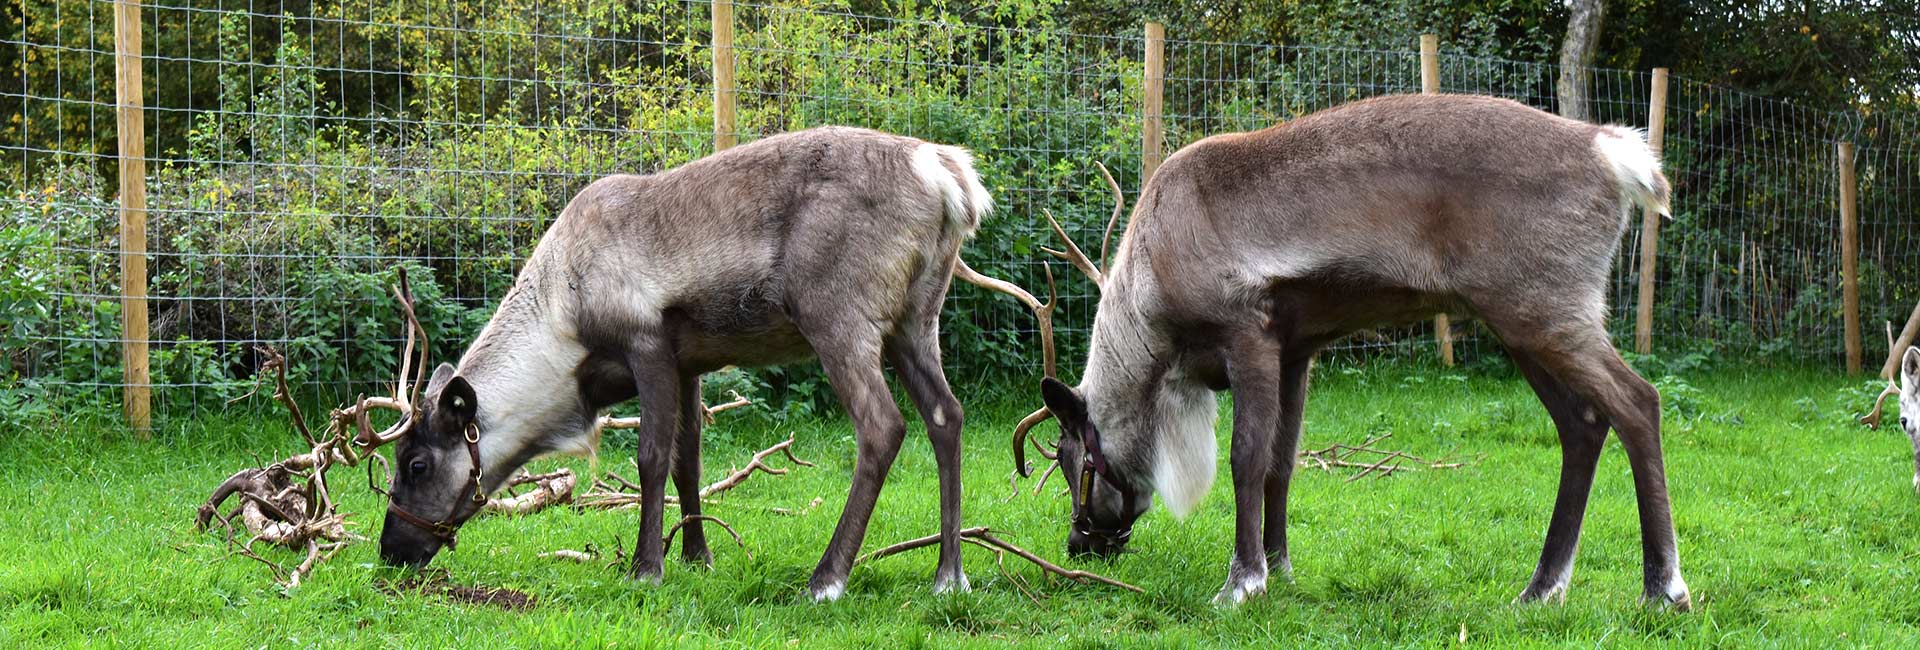 pair of reindeers grazing